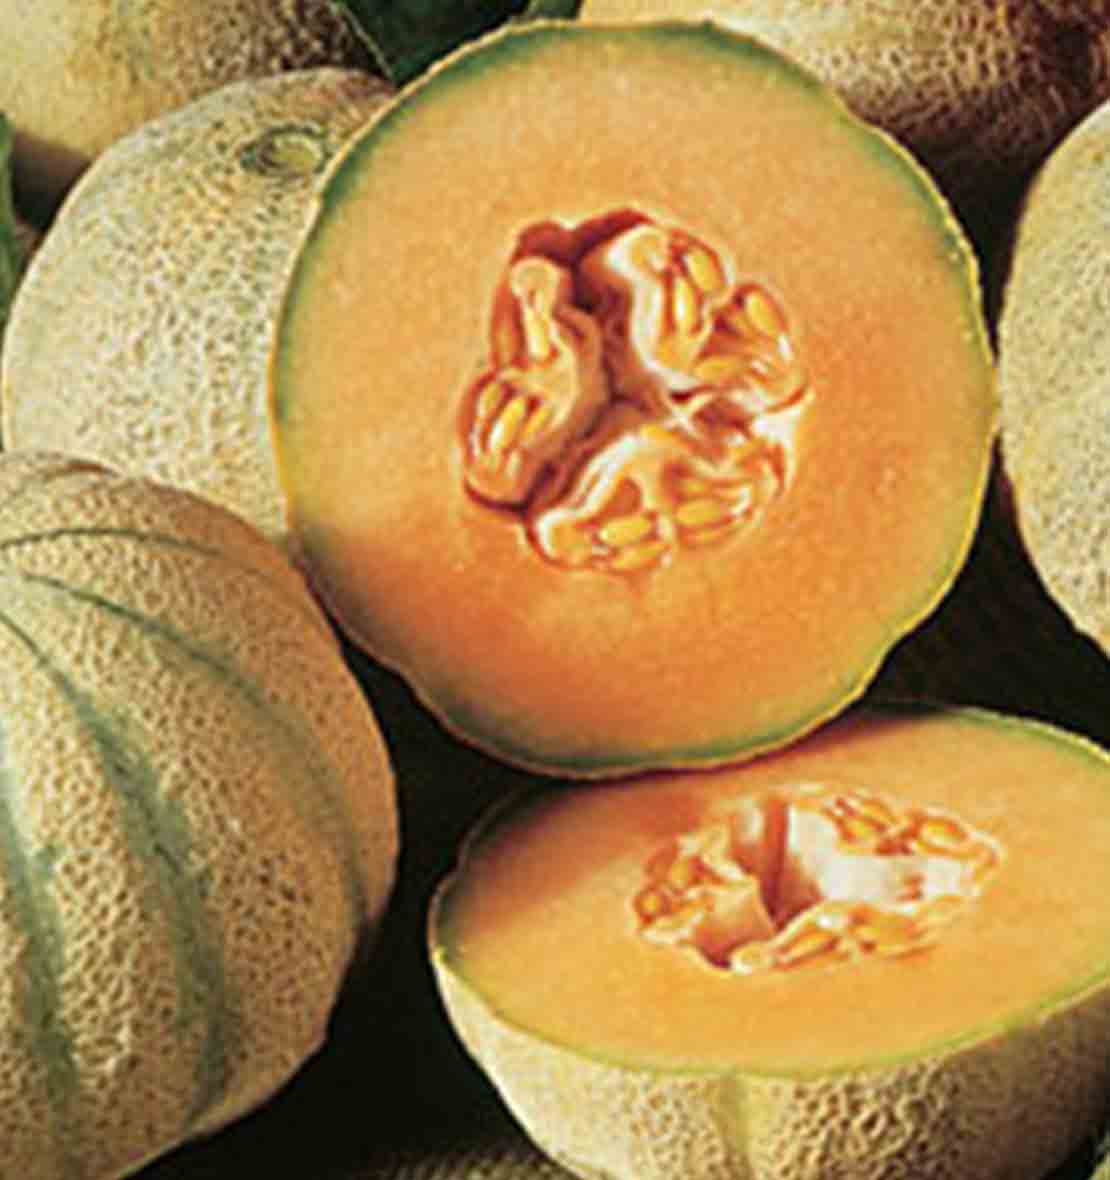 Melon Cantaloup Charentais